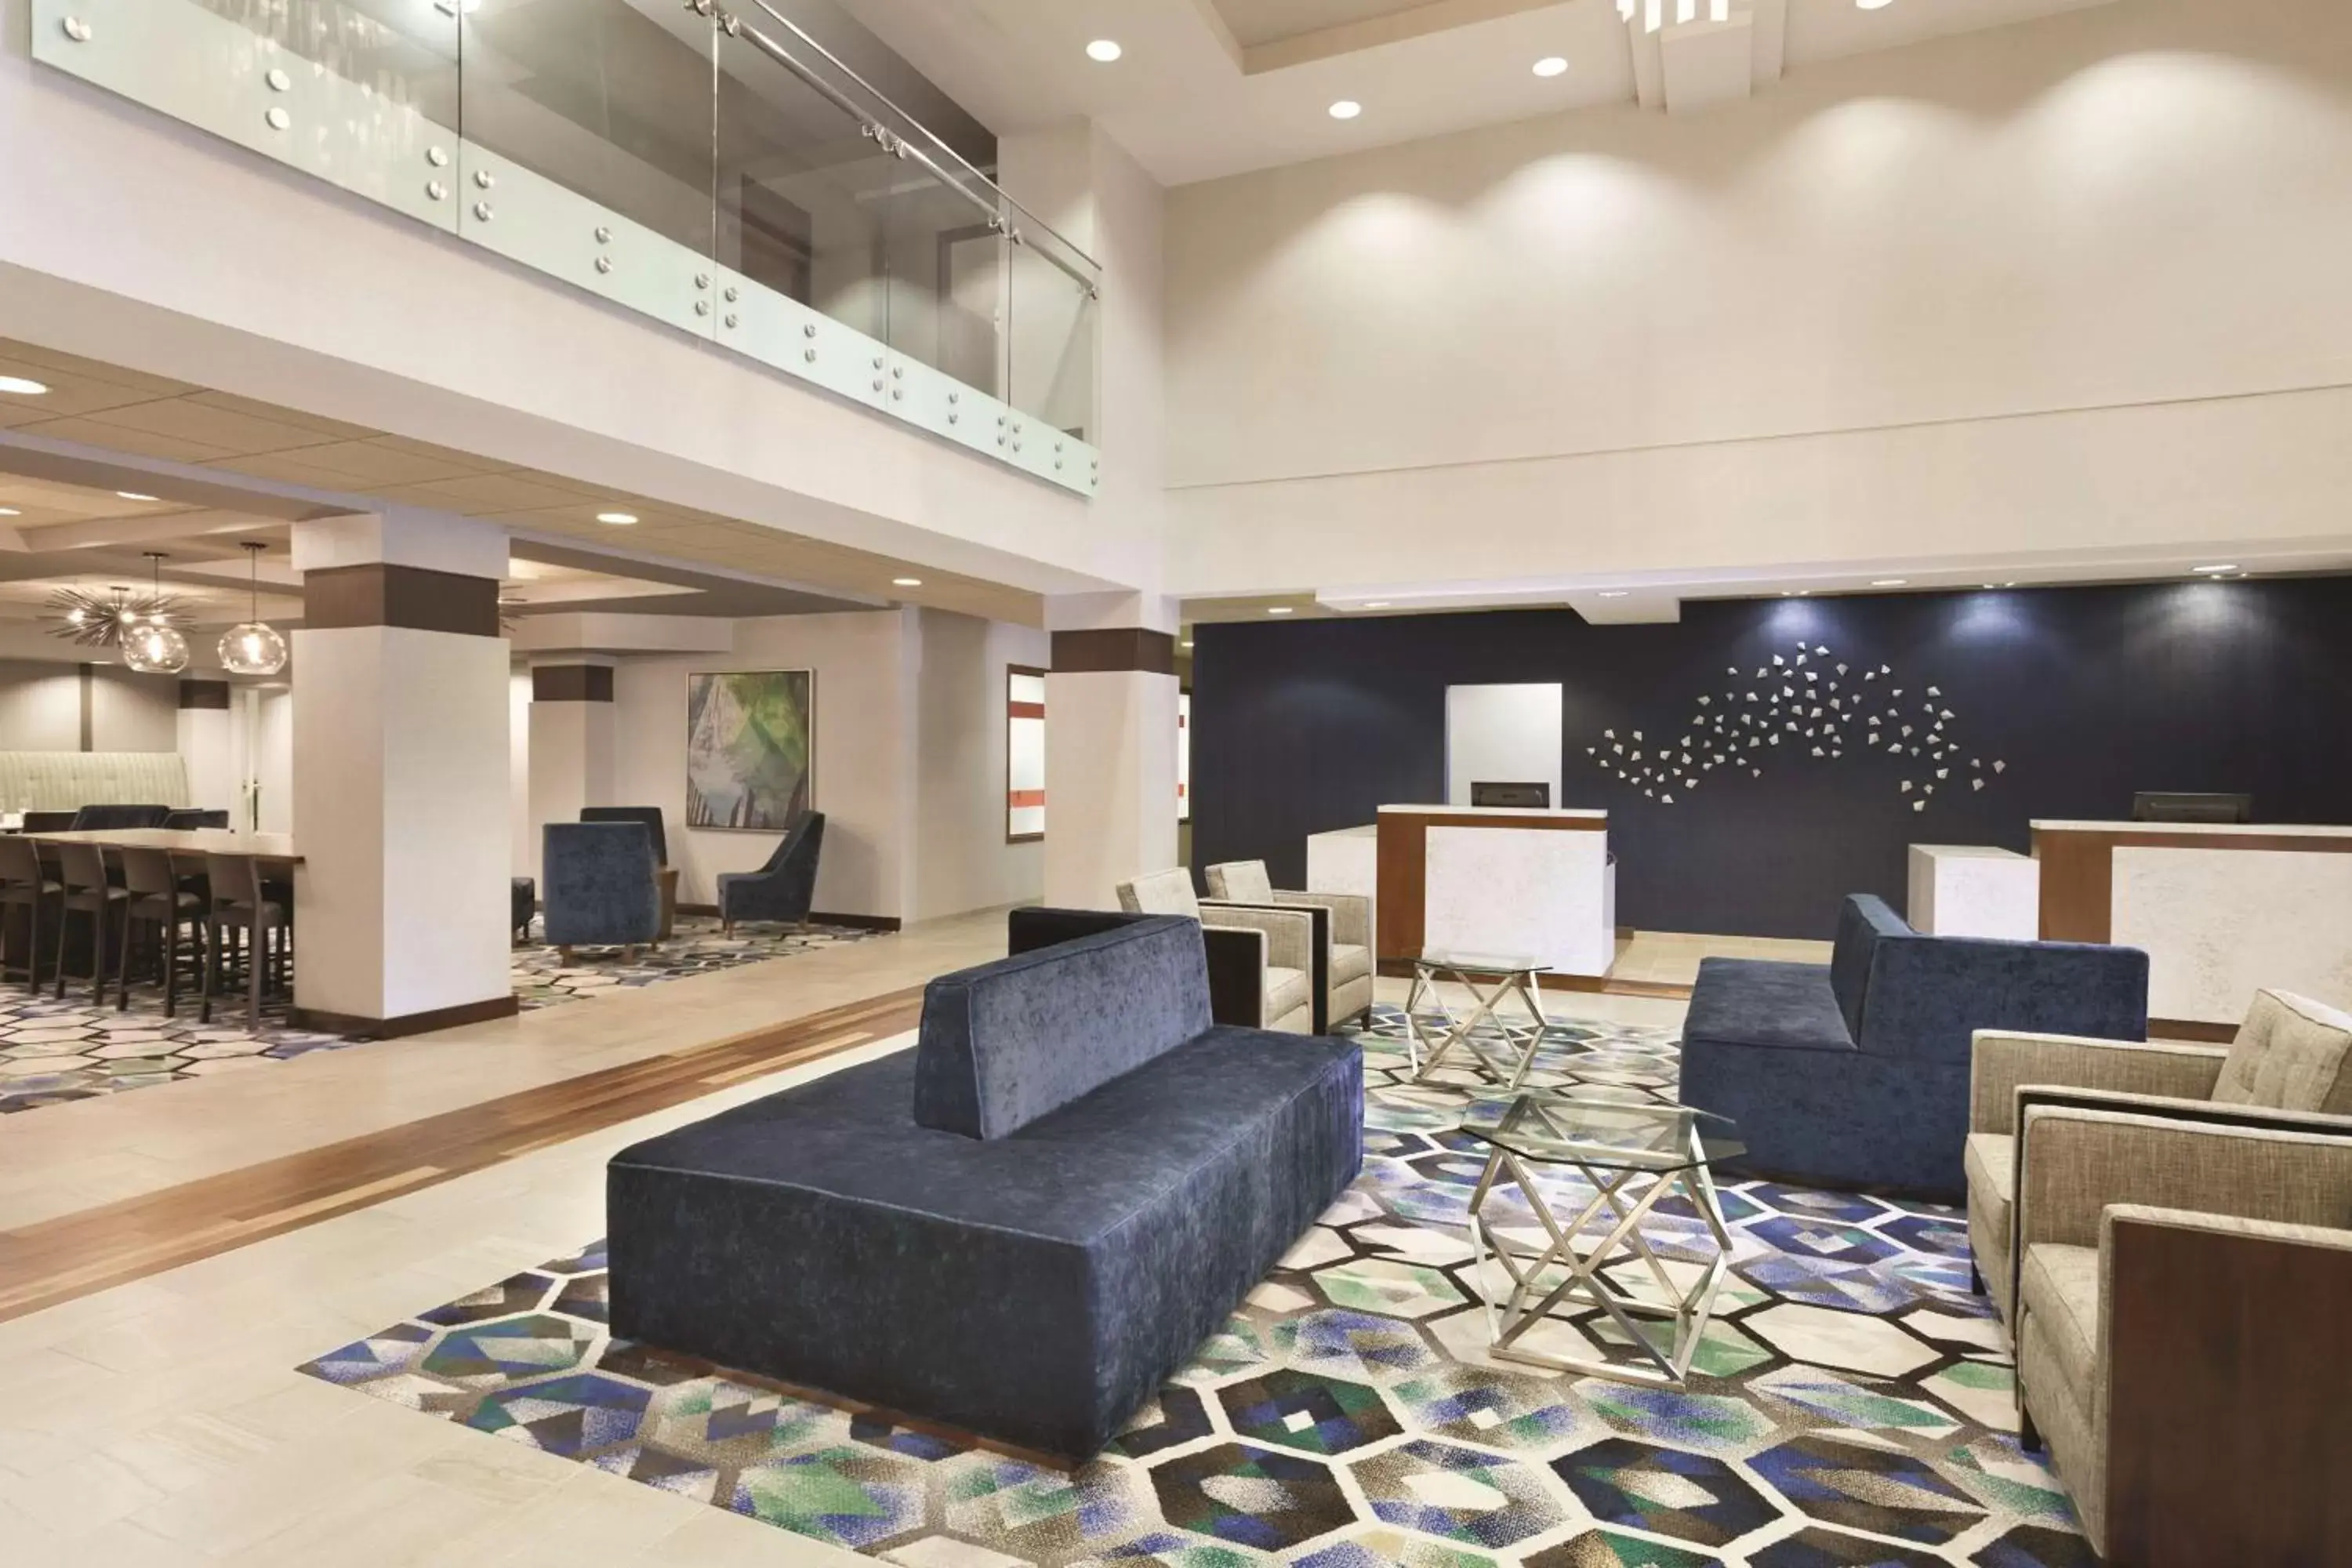 Lobby or reception, Lobby/Reception in Radisson Dallas North-Addison